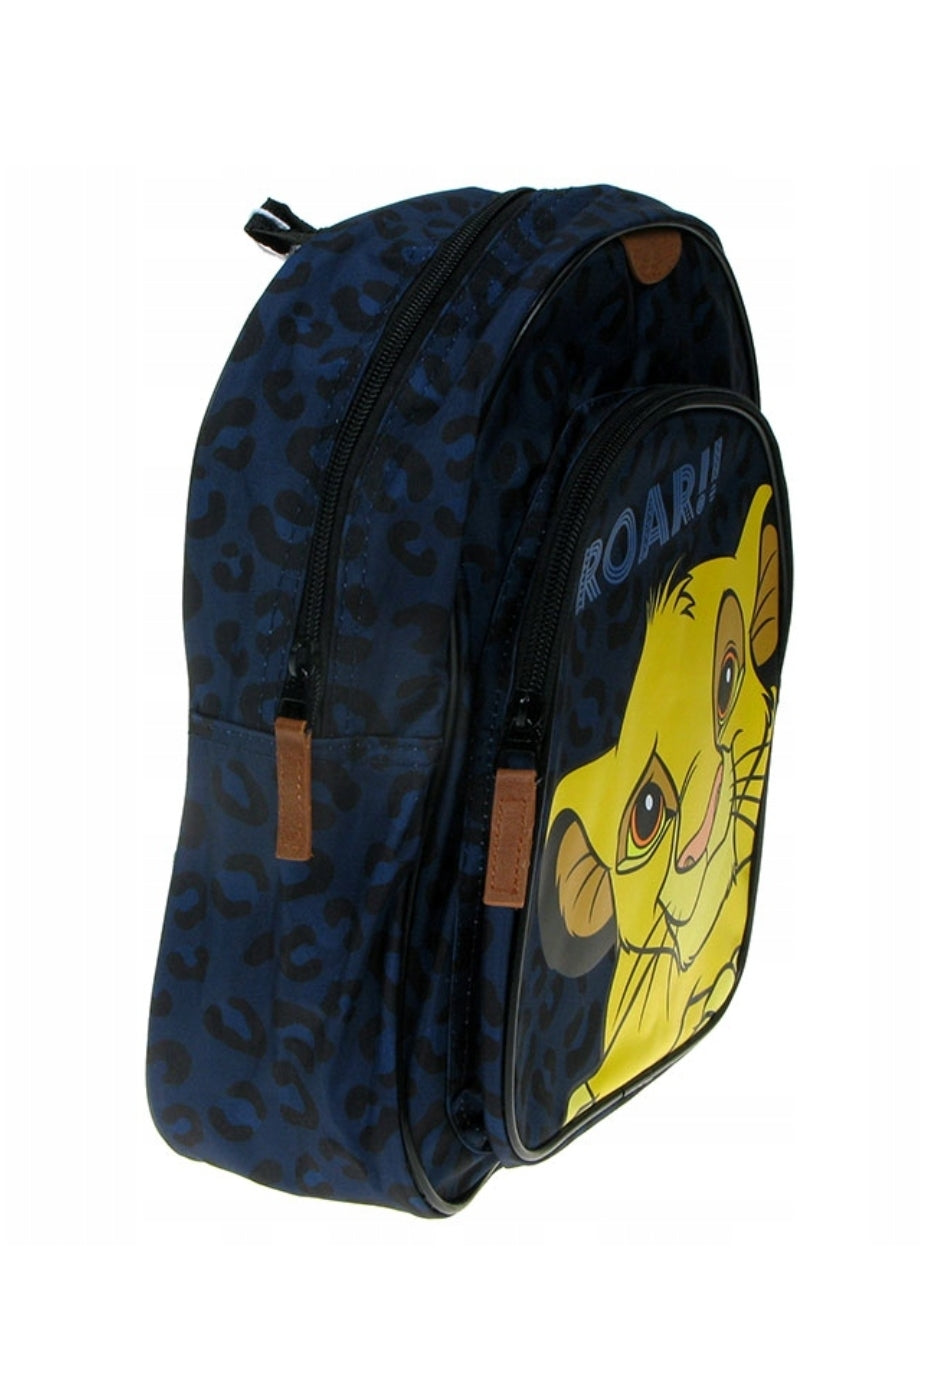 Lion King Backpack